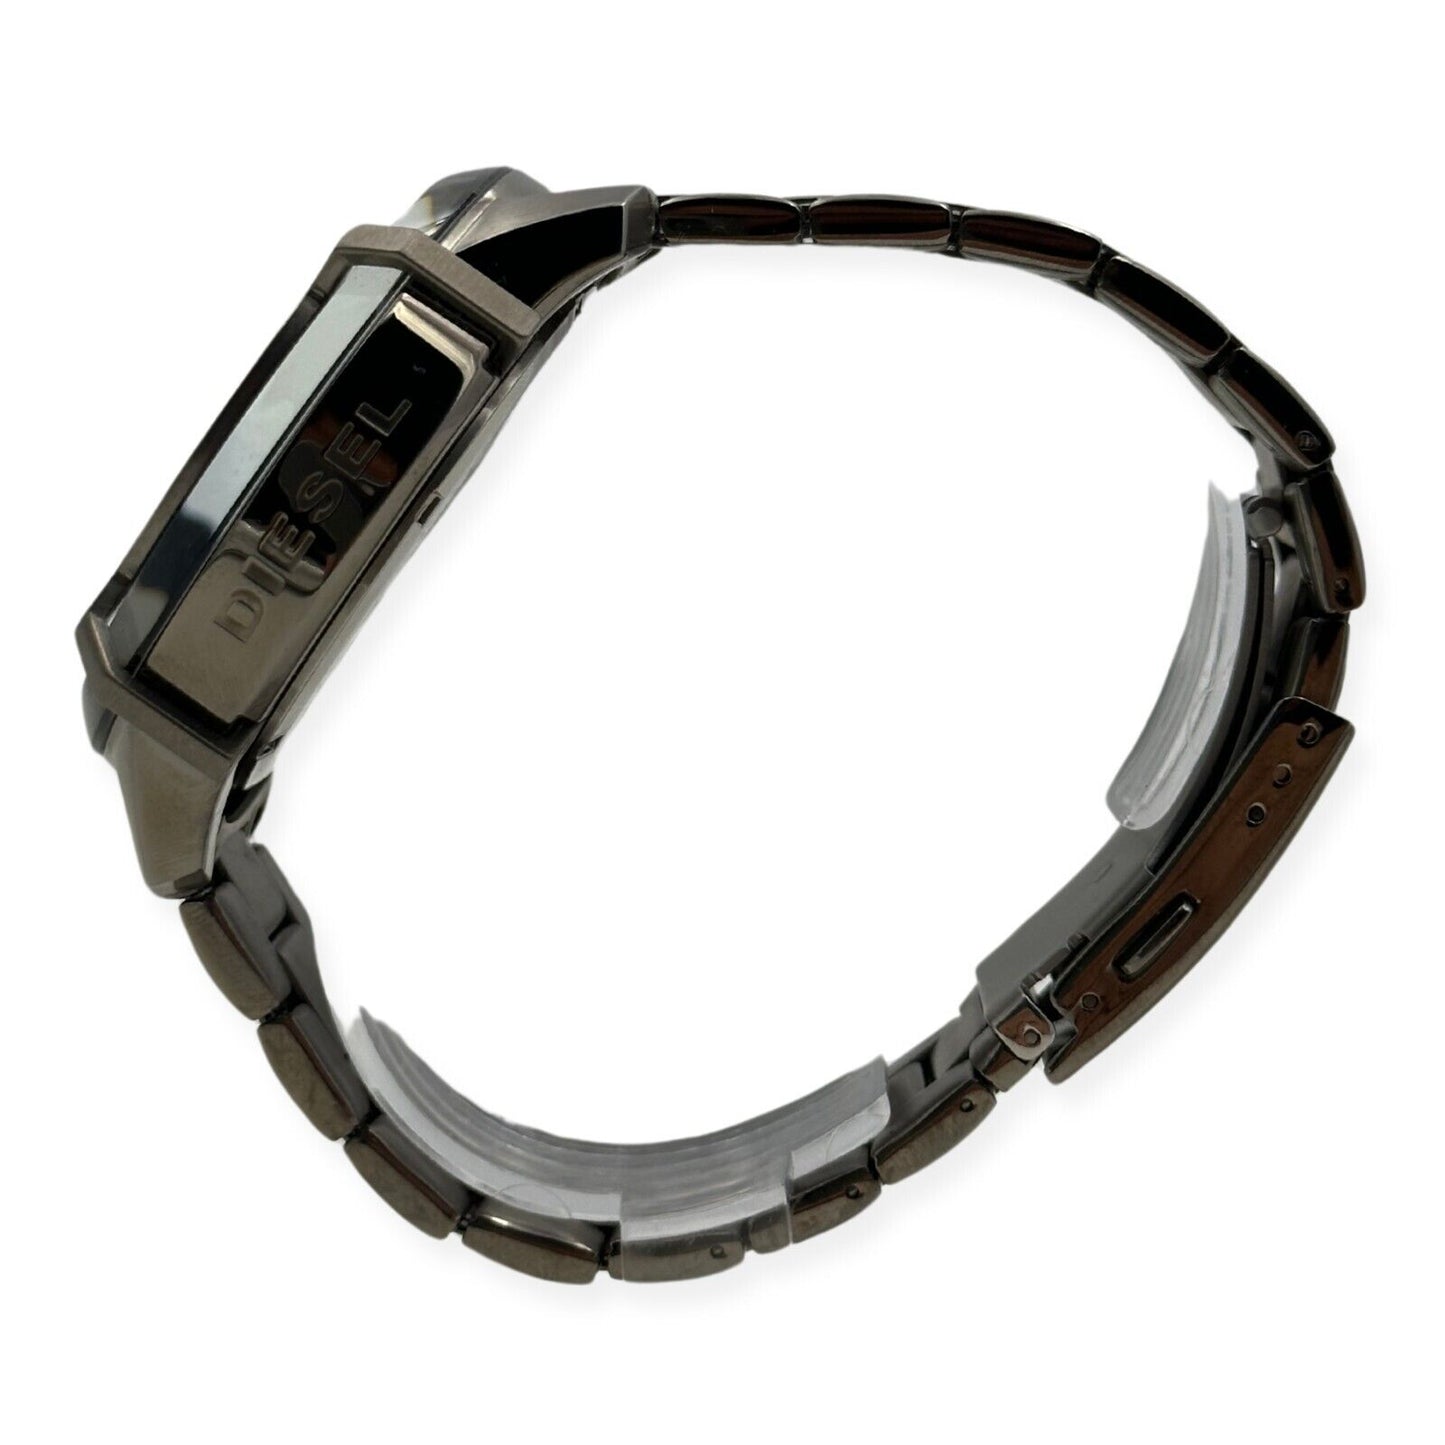 Diesel Men's Griffed Stainless Steel Chronograph Quartz Watch - DZ4586 - 698615143436